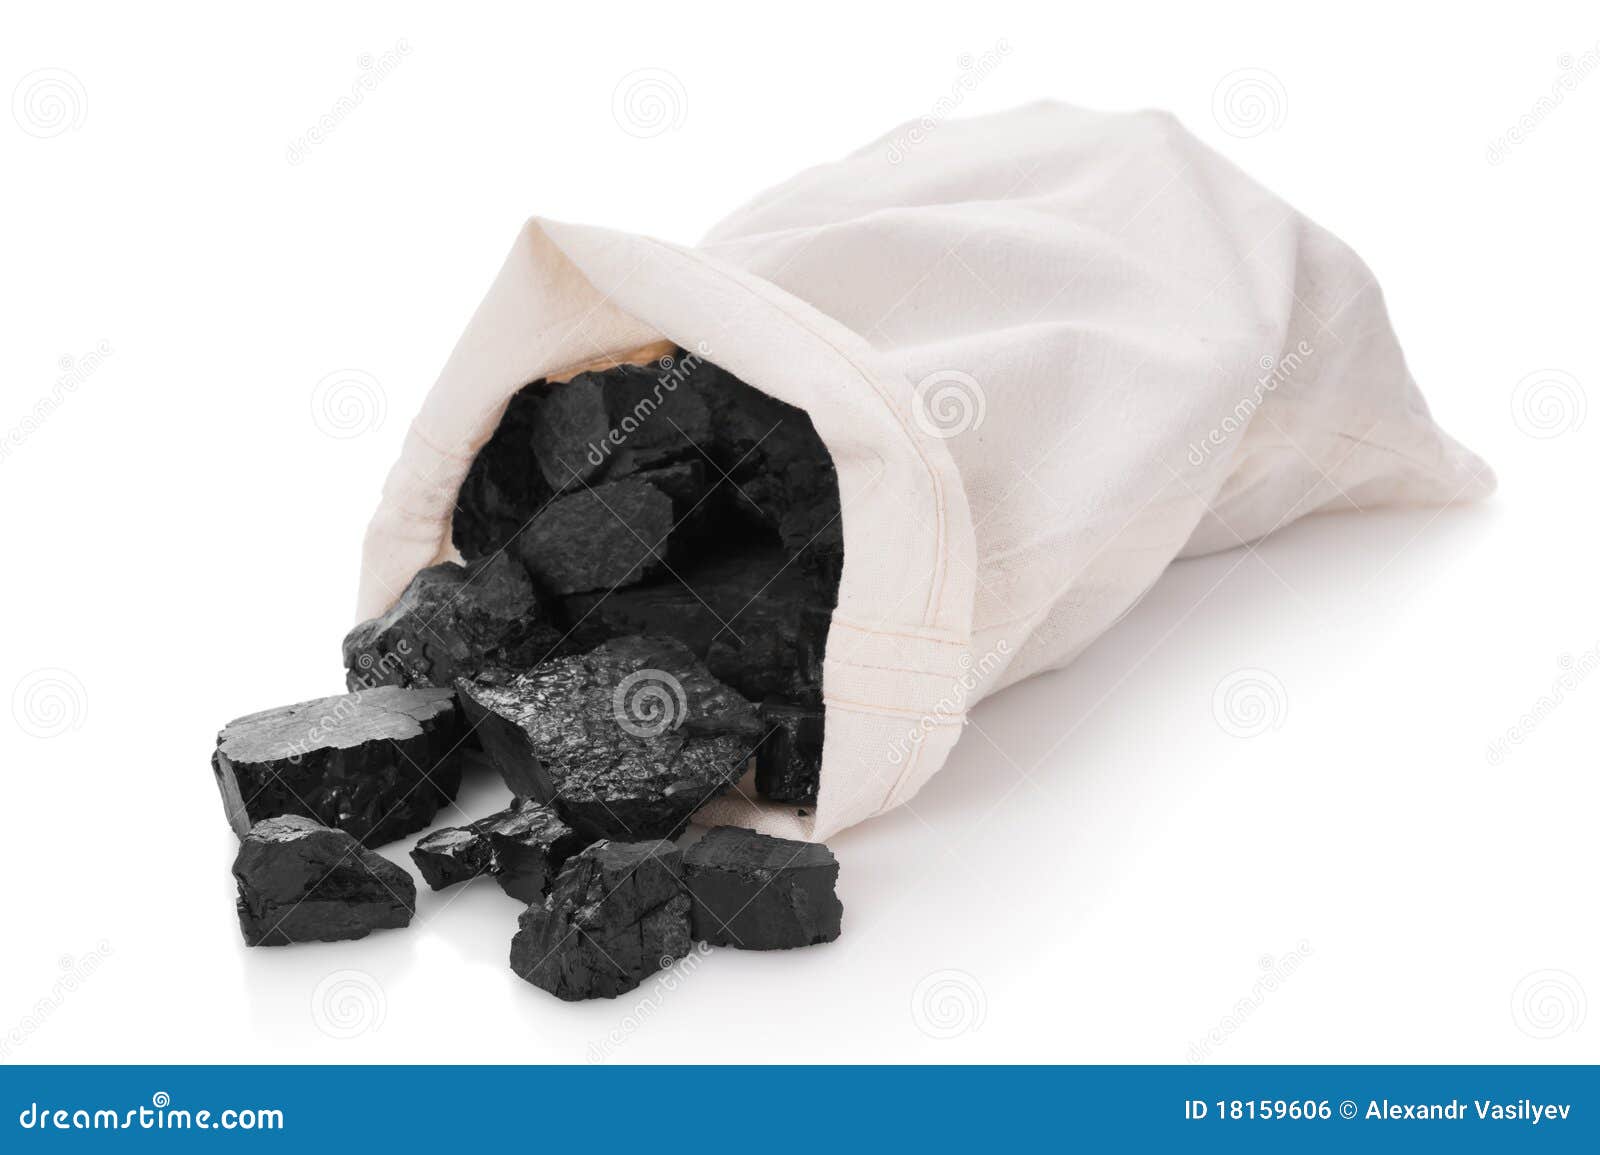 bag of coal